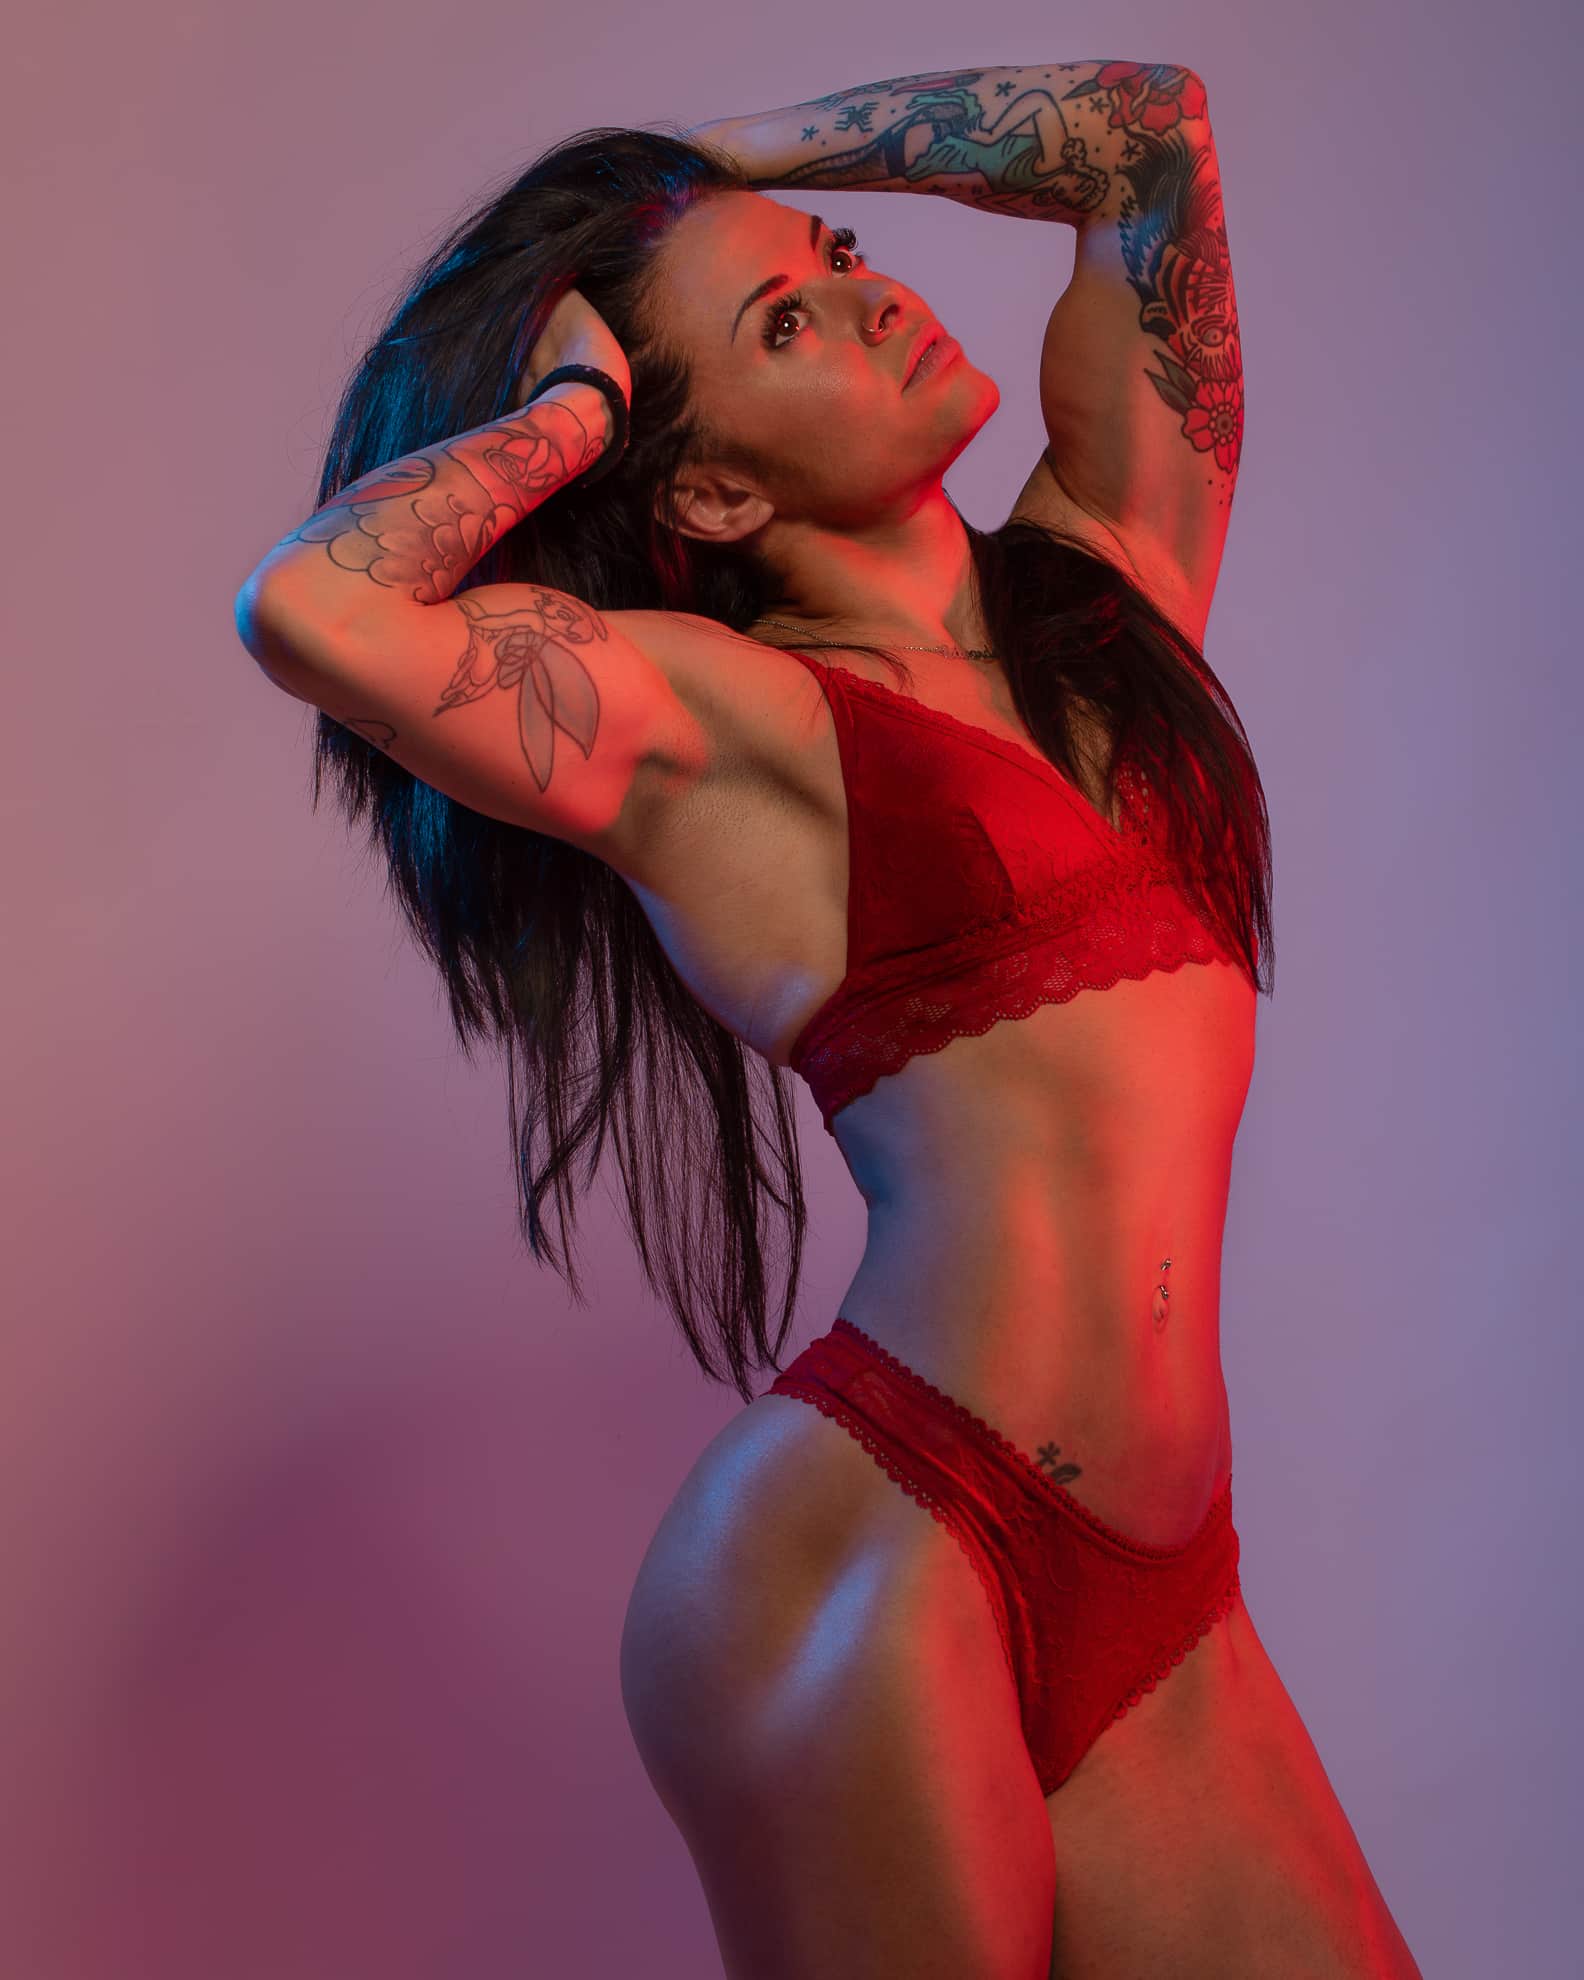 ragazza muscolosa tatuata indossa intimo rosso in studio fotografico